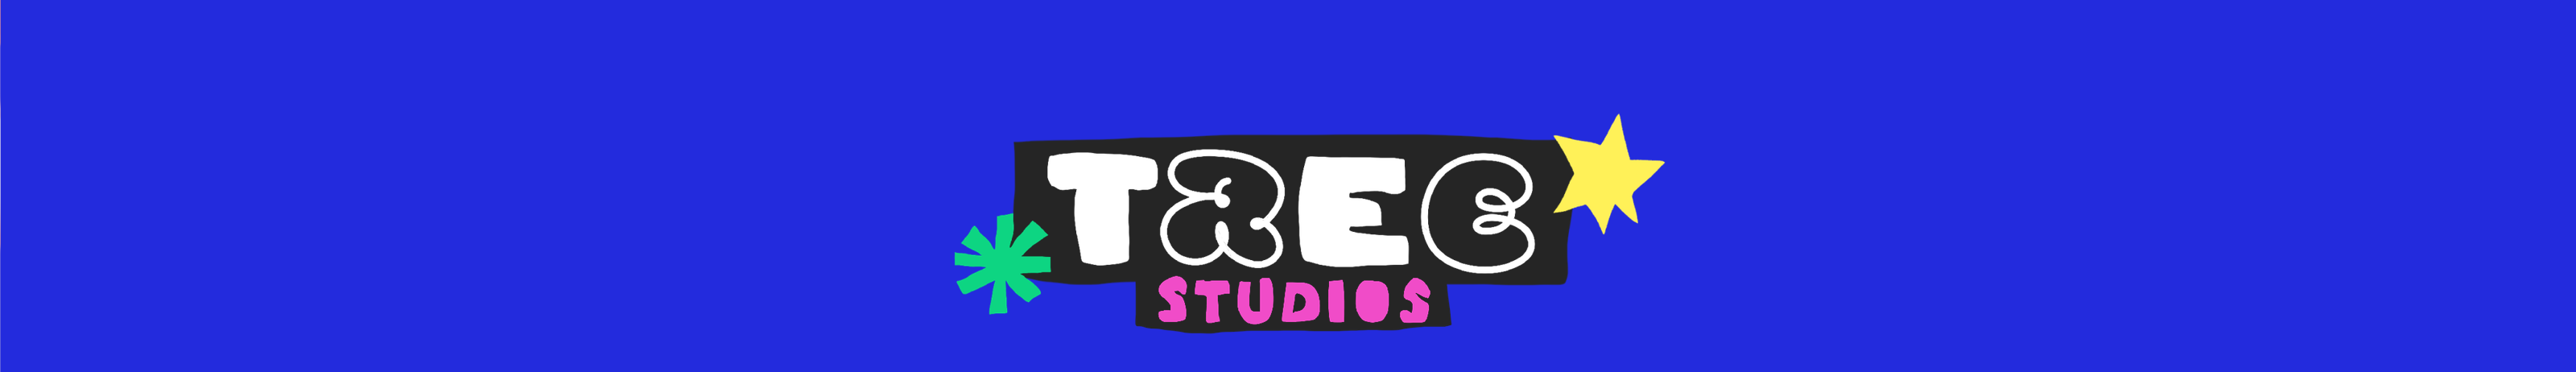 Profil-Banner von Tree Studios